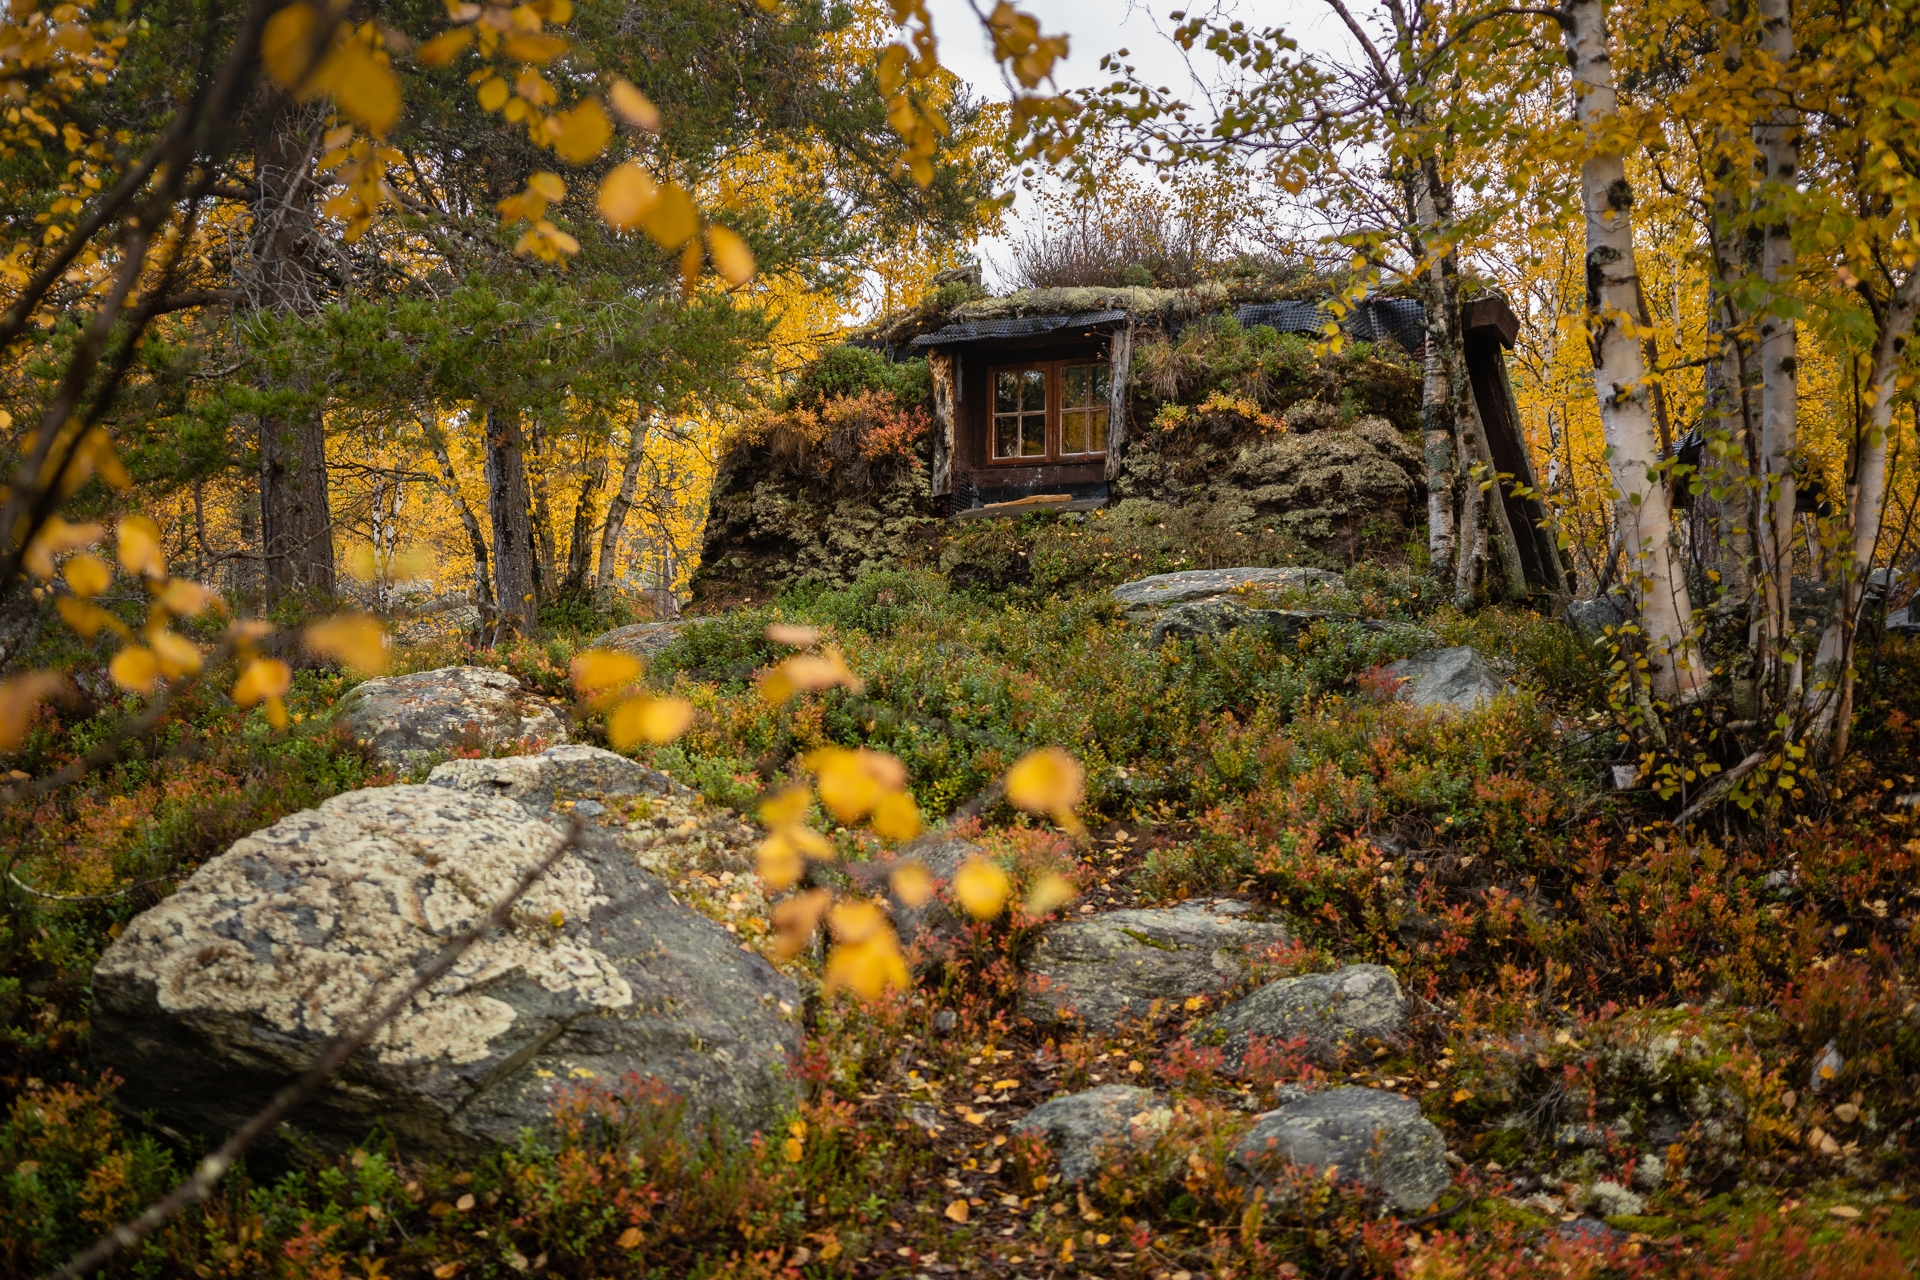 Roastkoia. A beautiful cabin hidden in the woods.